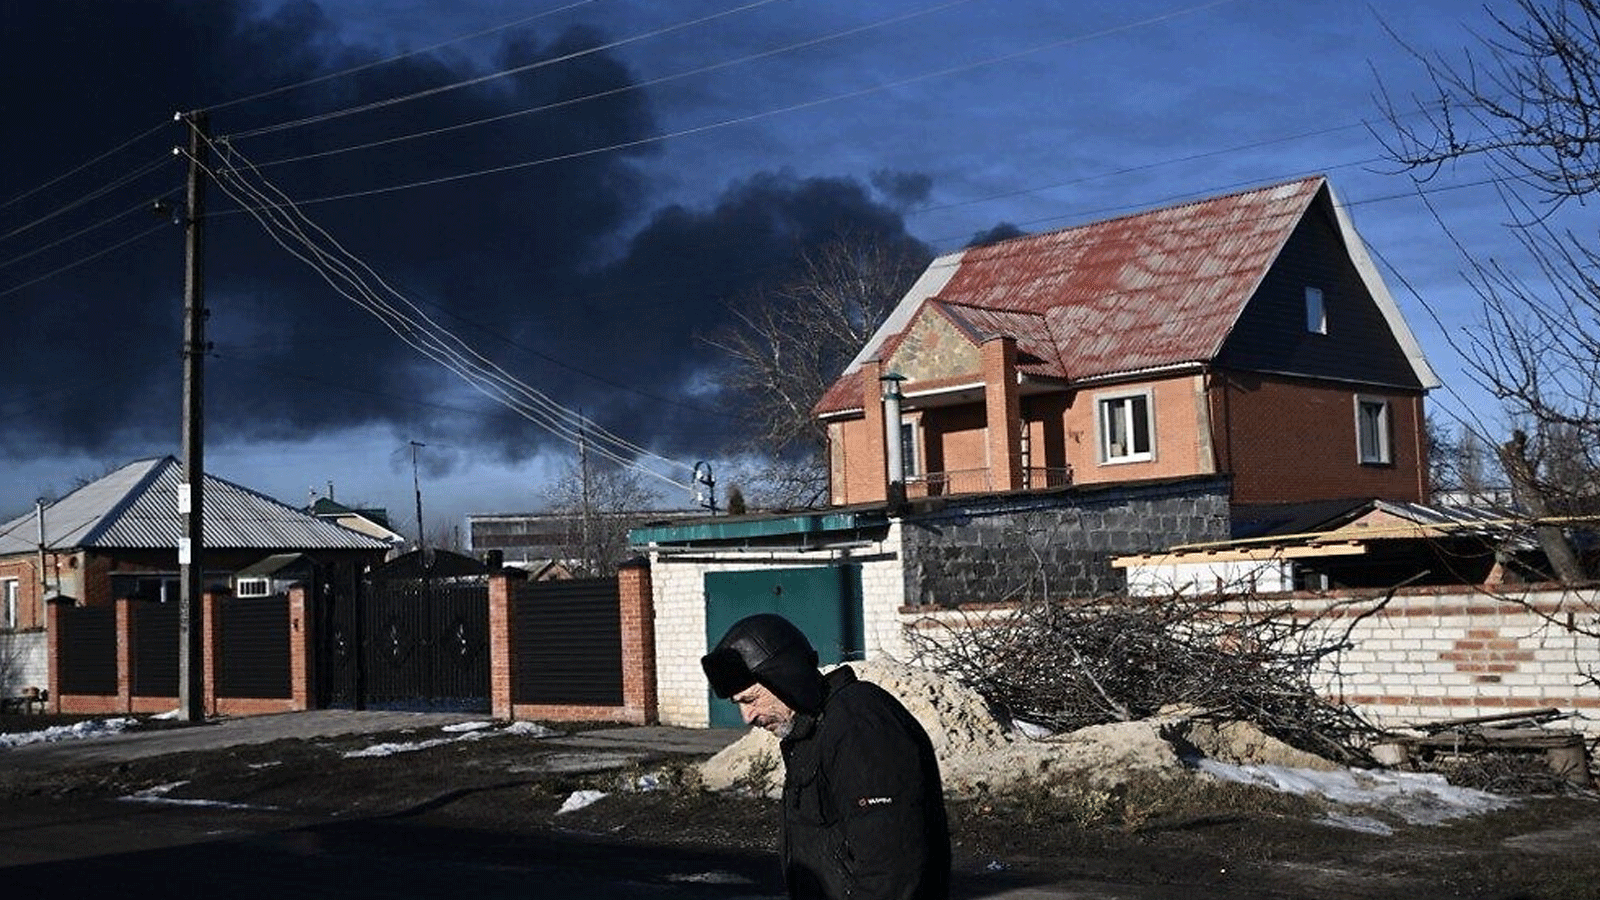 رجل يسير في شارع بينما يتصاعد دخان أسود من مطار عسكري في تشوجوييف بالقرب من خاركيف في 24 شباط\ فبراير 2022 